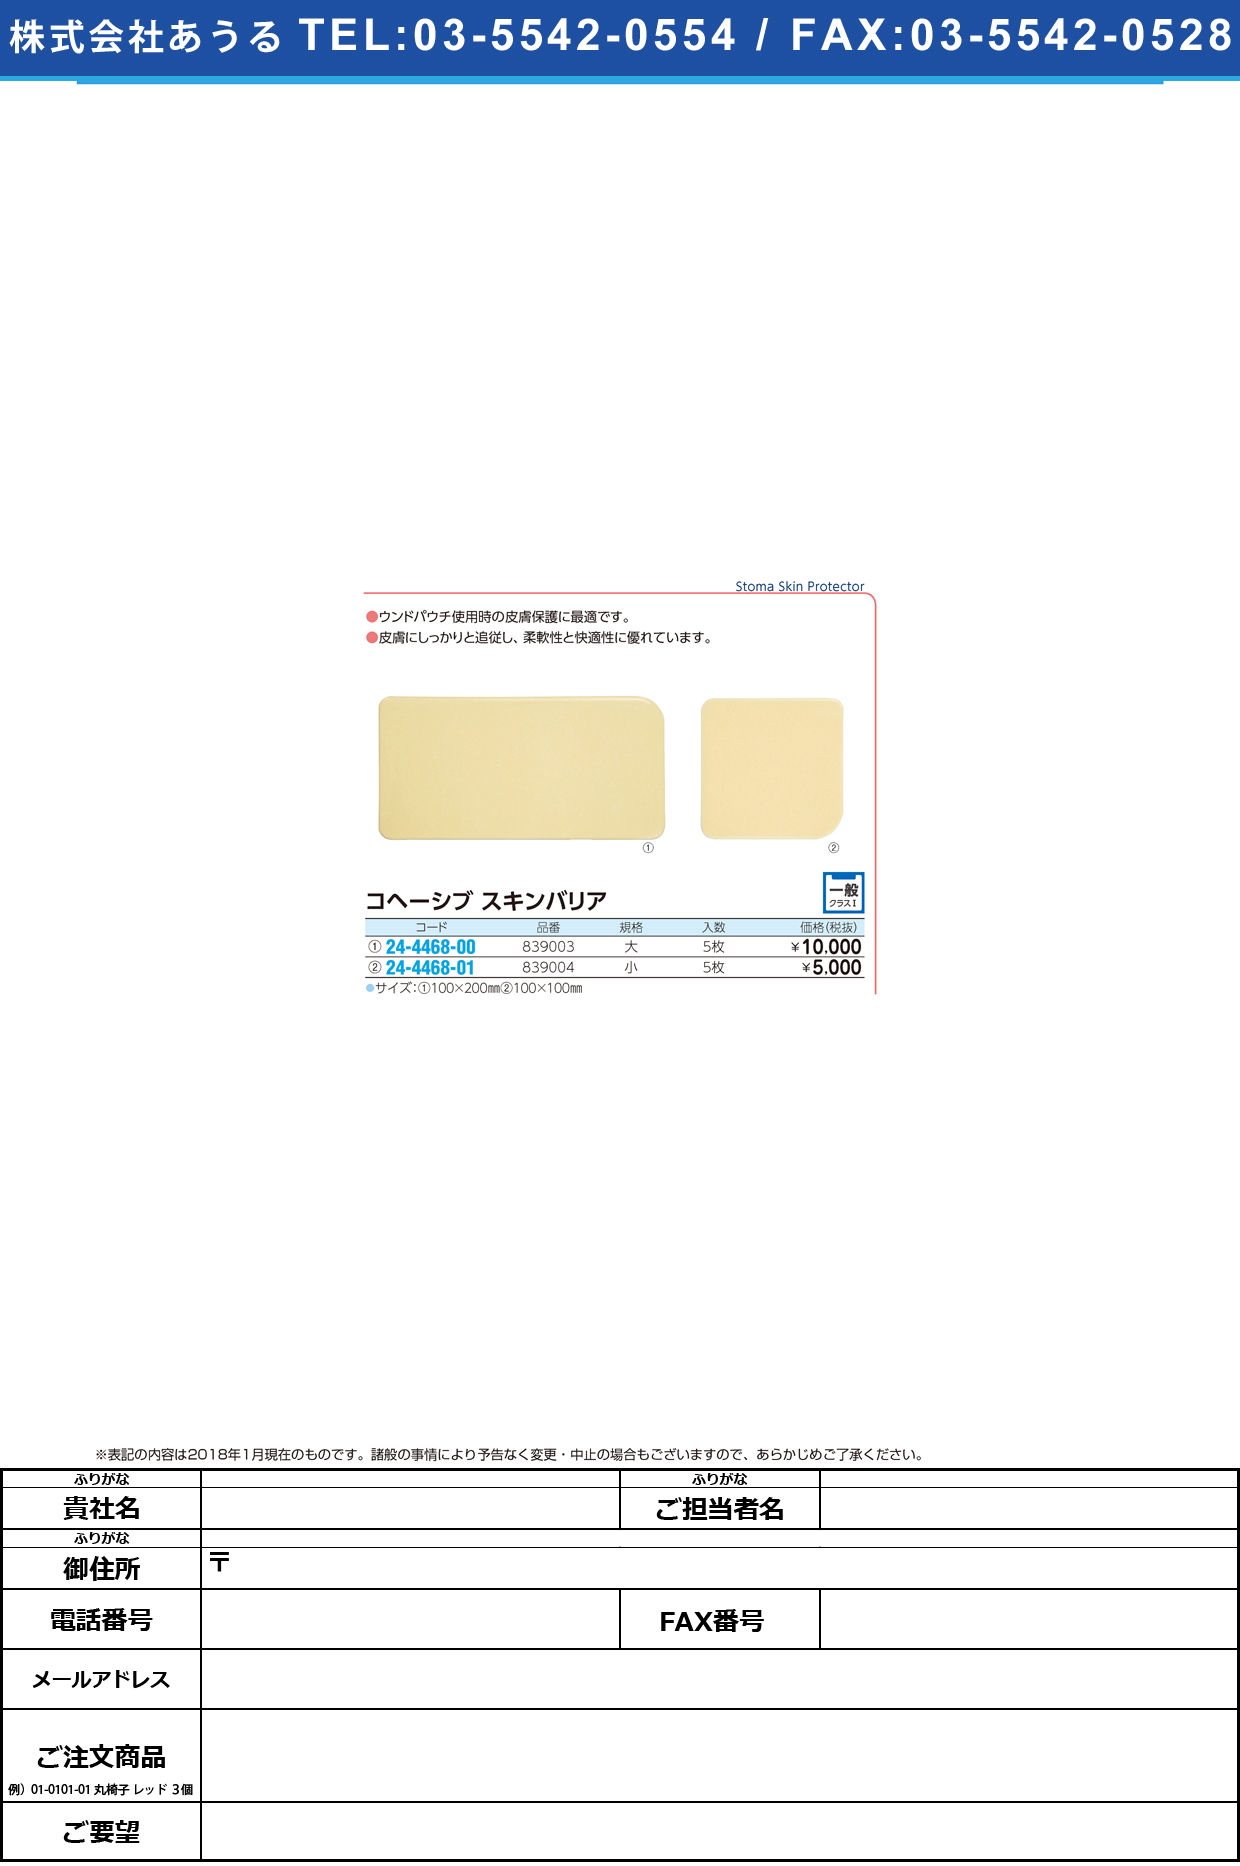 (24-4468-00)コヘーシブスキンバリア 839003(ﾀﾞｲ)5ﾏｲ ｺﾍｰｼﾌﾞｽｷﾝﾊﾞﾘｱ【1箱単位】【2018年カタログ商品】